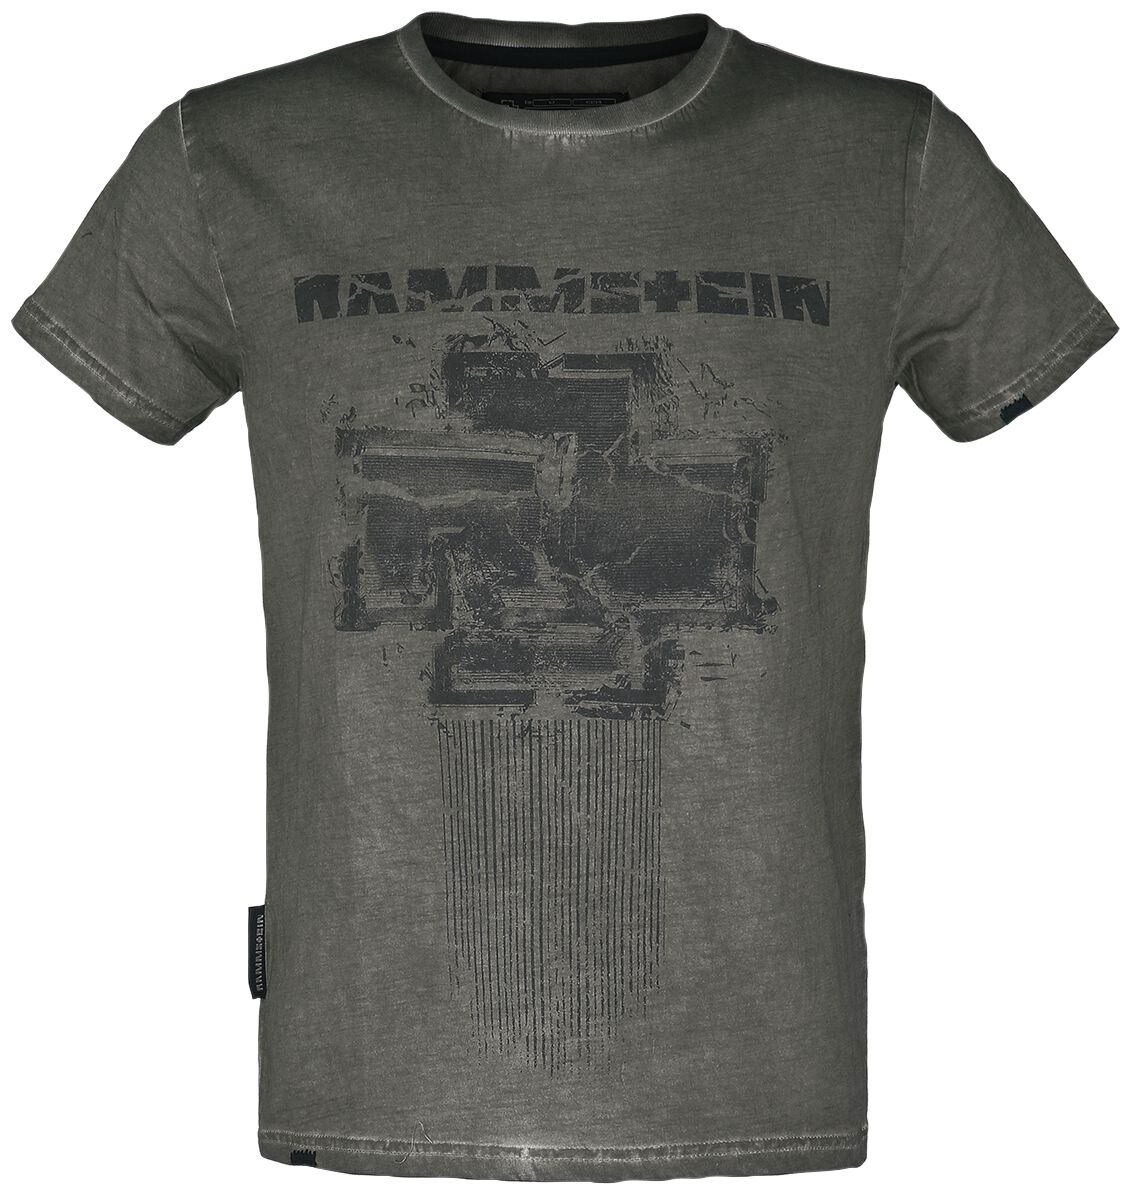 Rammstein T-Shirt - Broken Logo II - S bis 5XL - für Männer - Größe S - oliv  - Lizenziertes Merchandise!